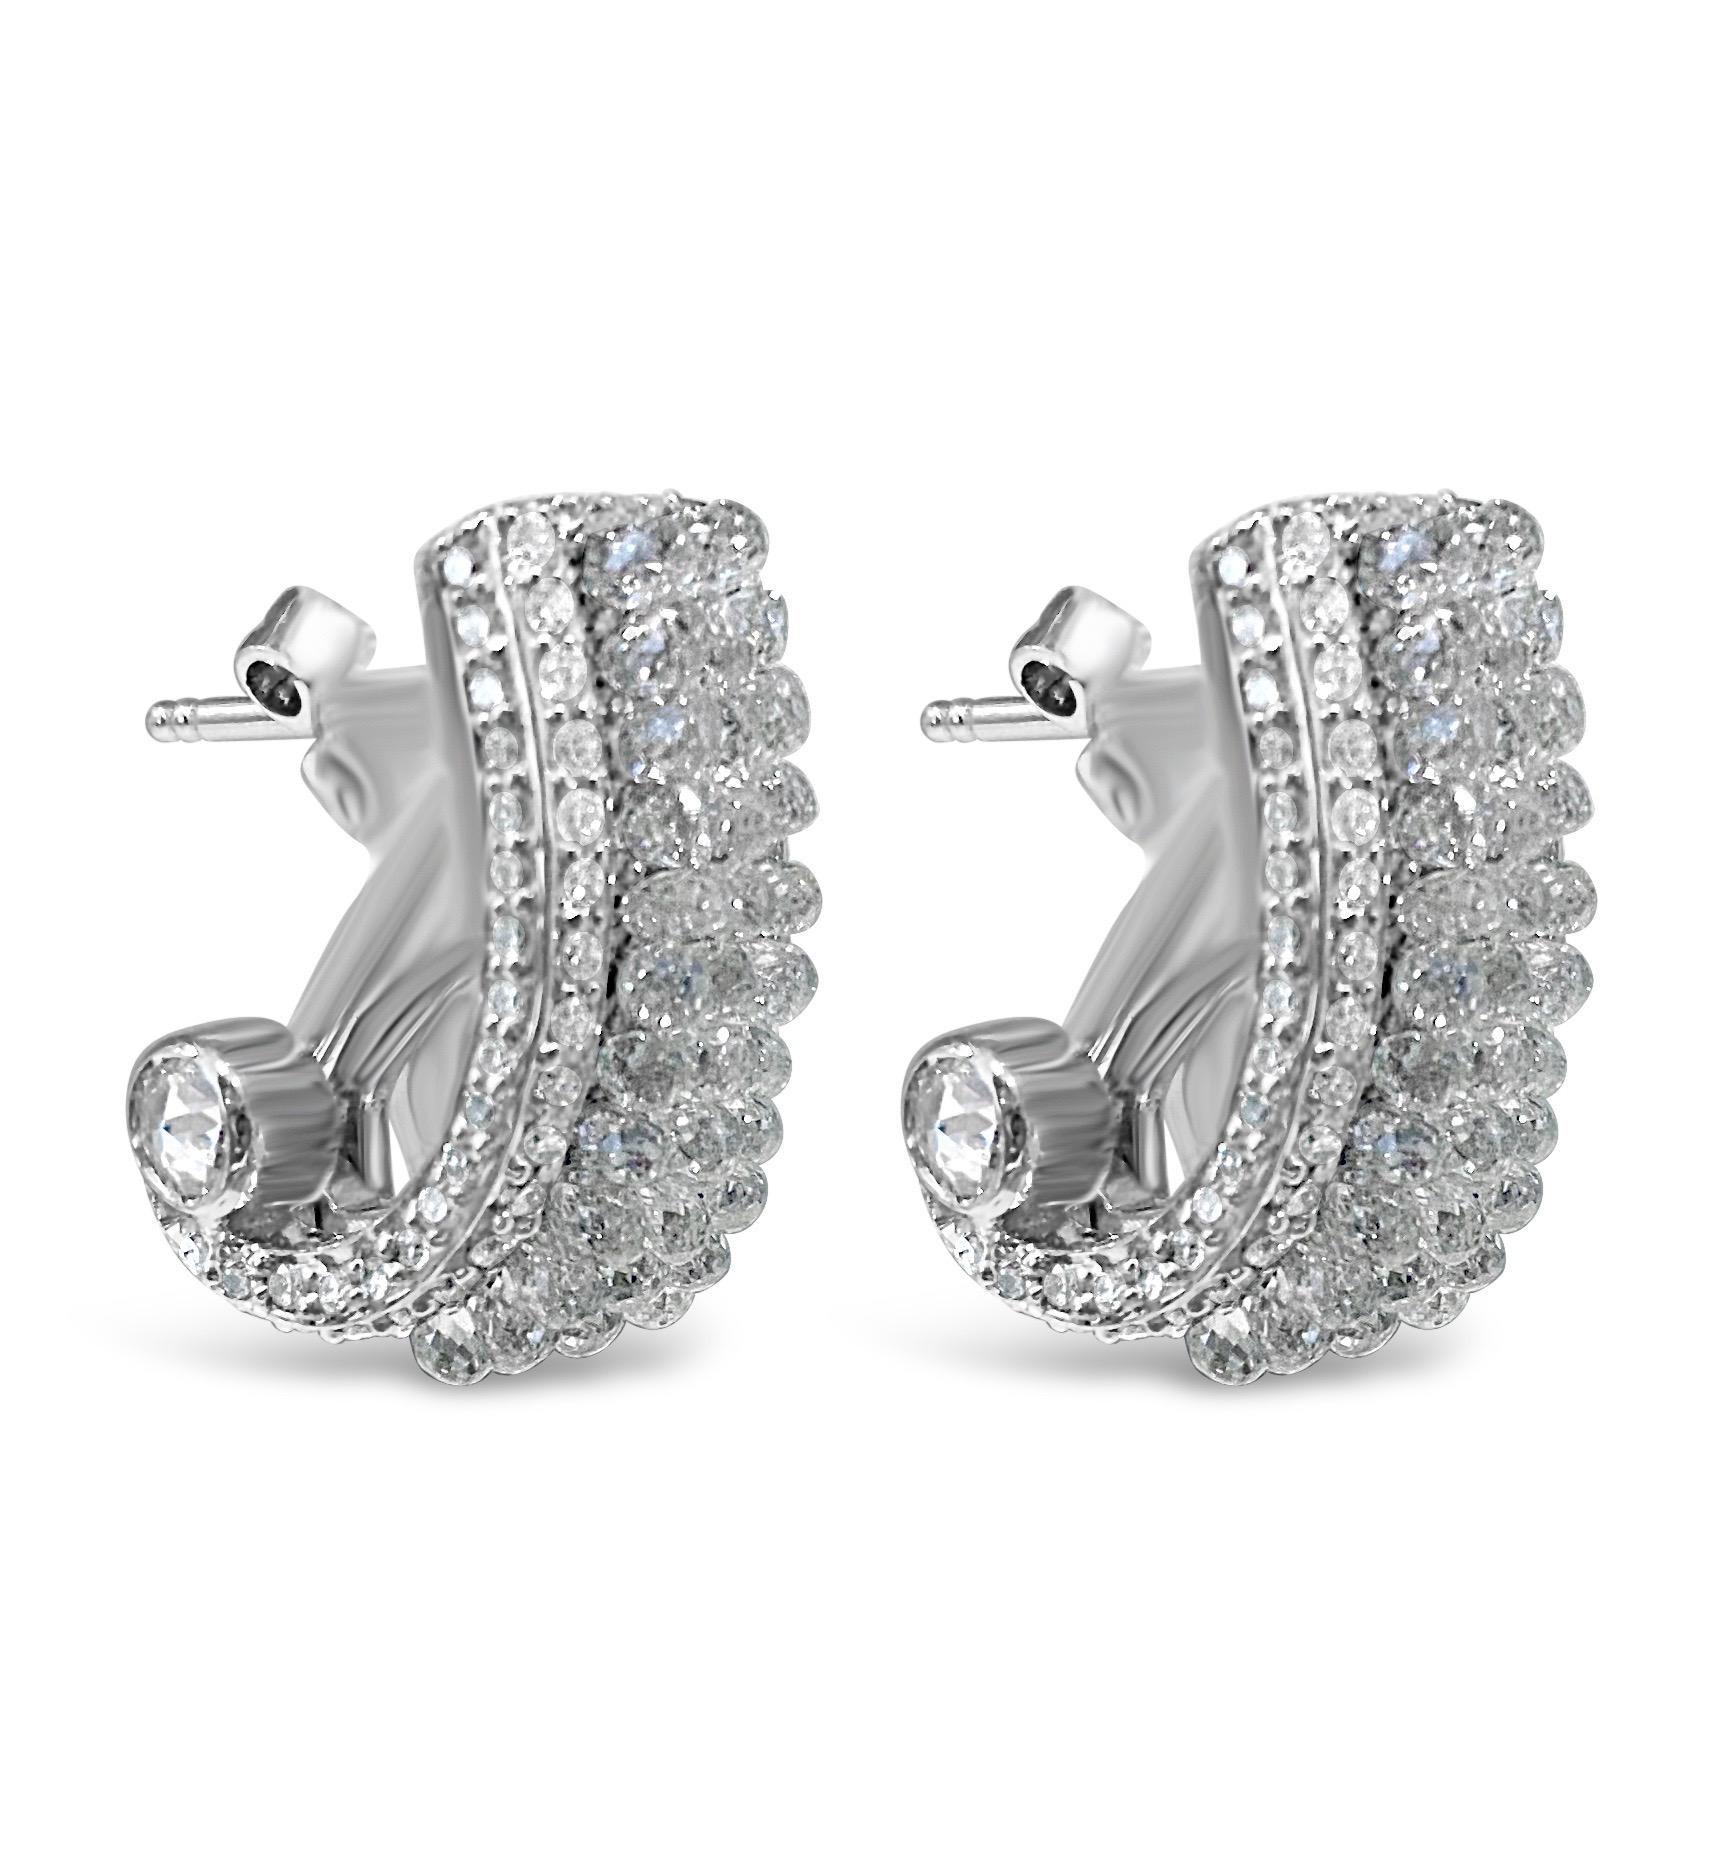 Voici les boucles d'oreilles de Vienne, un design unique en son genre. 
Une création artistique comprenant 10 carats de diamants Briolette, sertis verticalement sur 3 rangs de brillance et d'éclat.  La taille en briolette est particulièrement